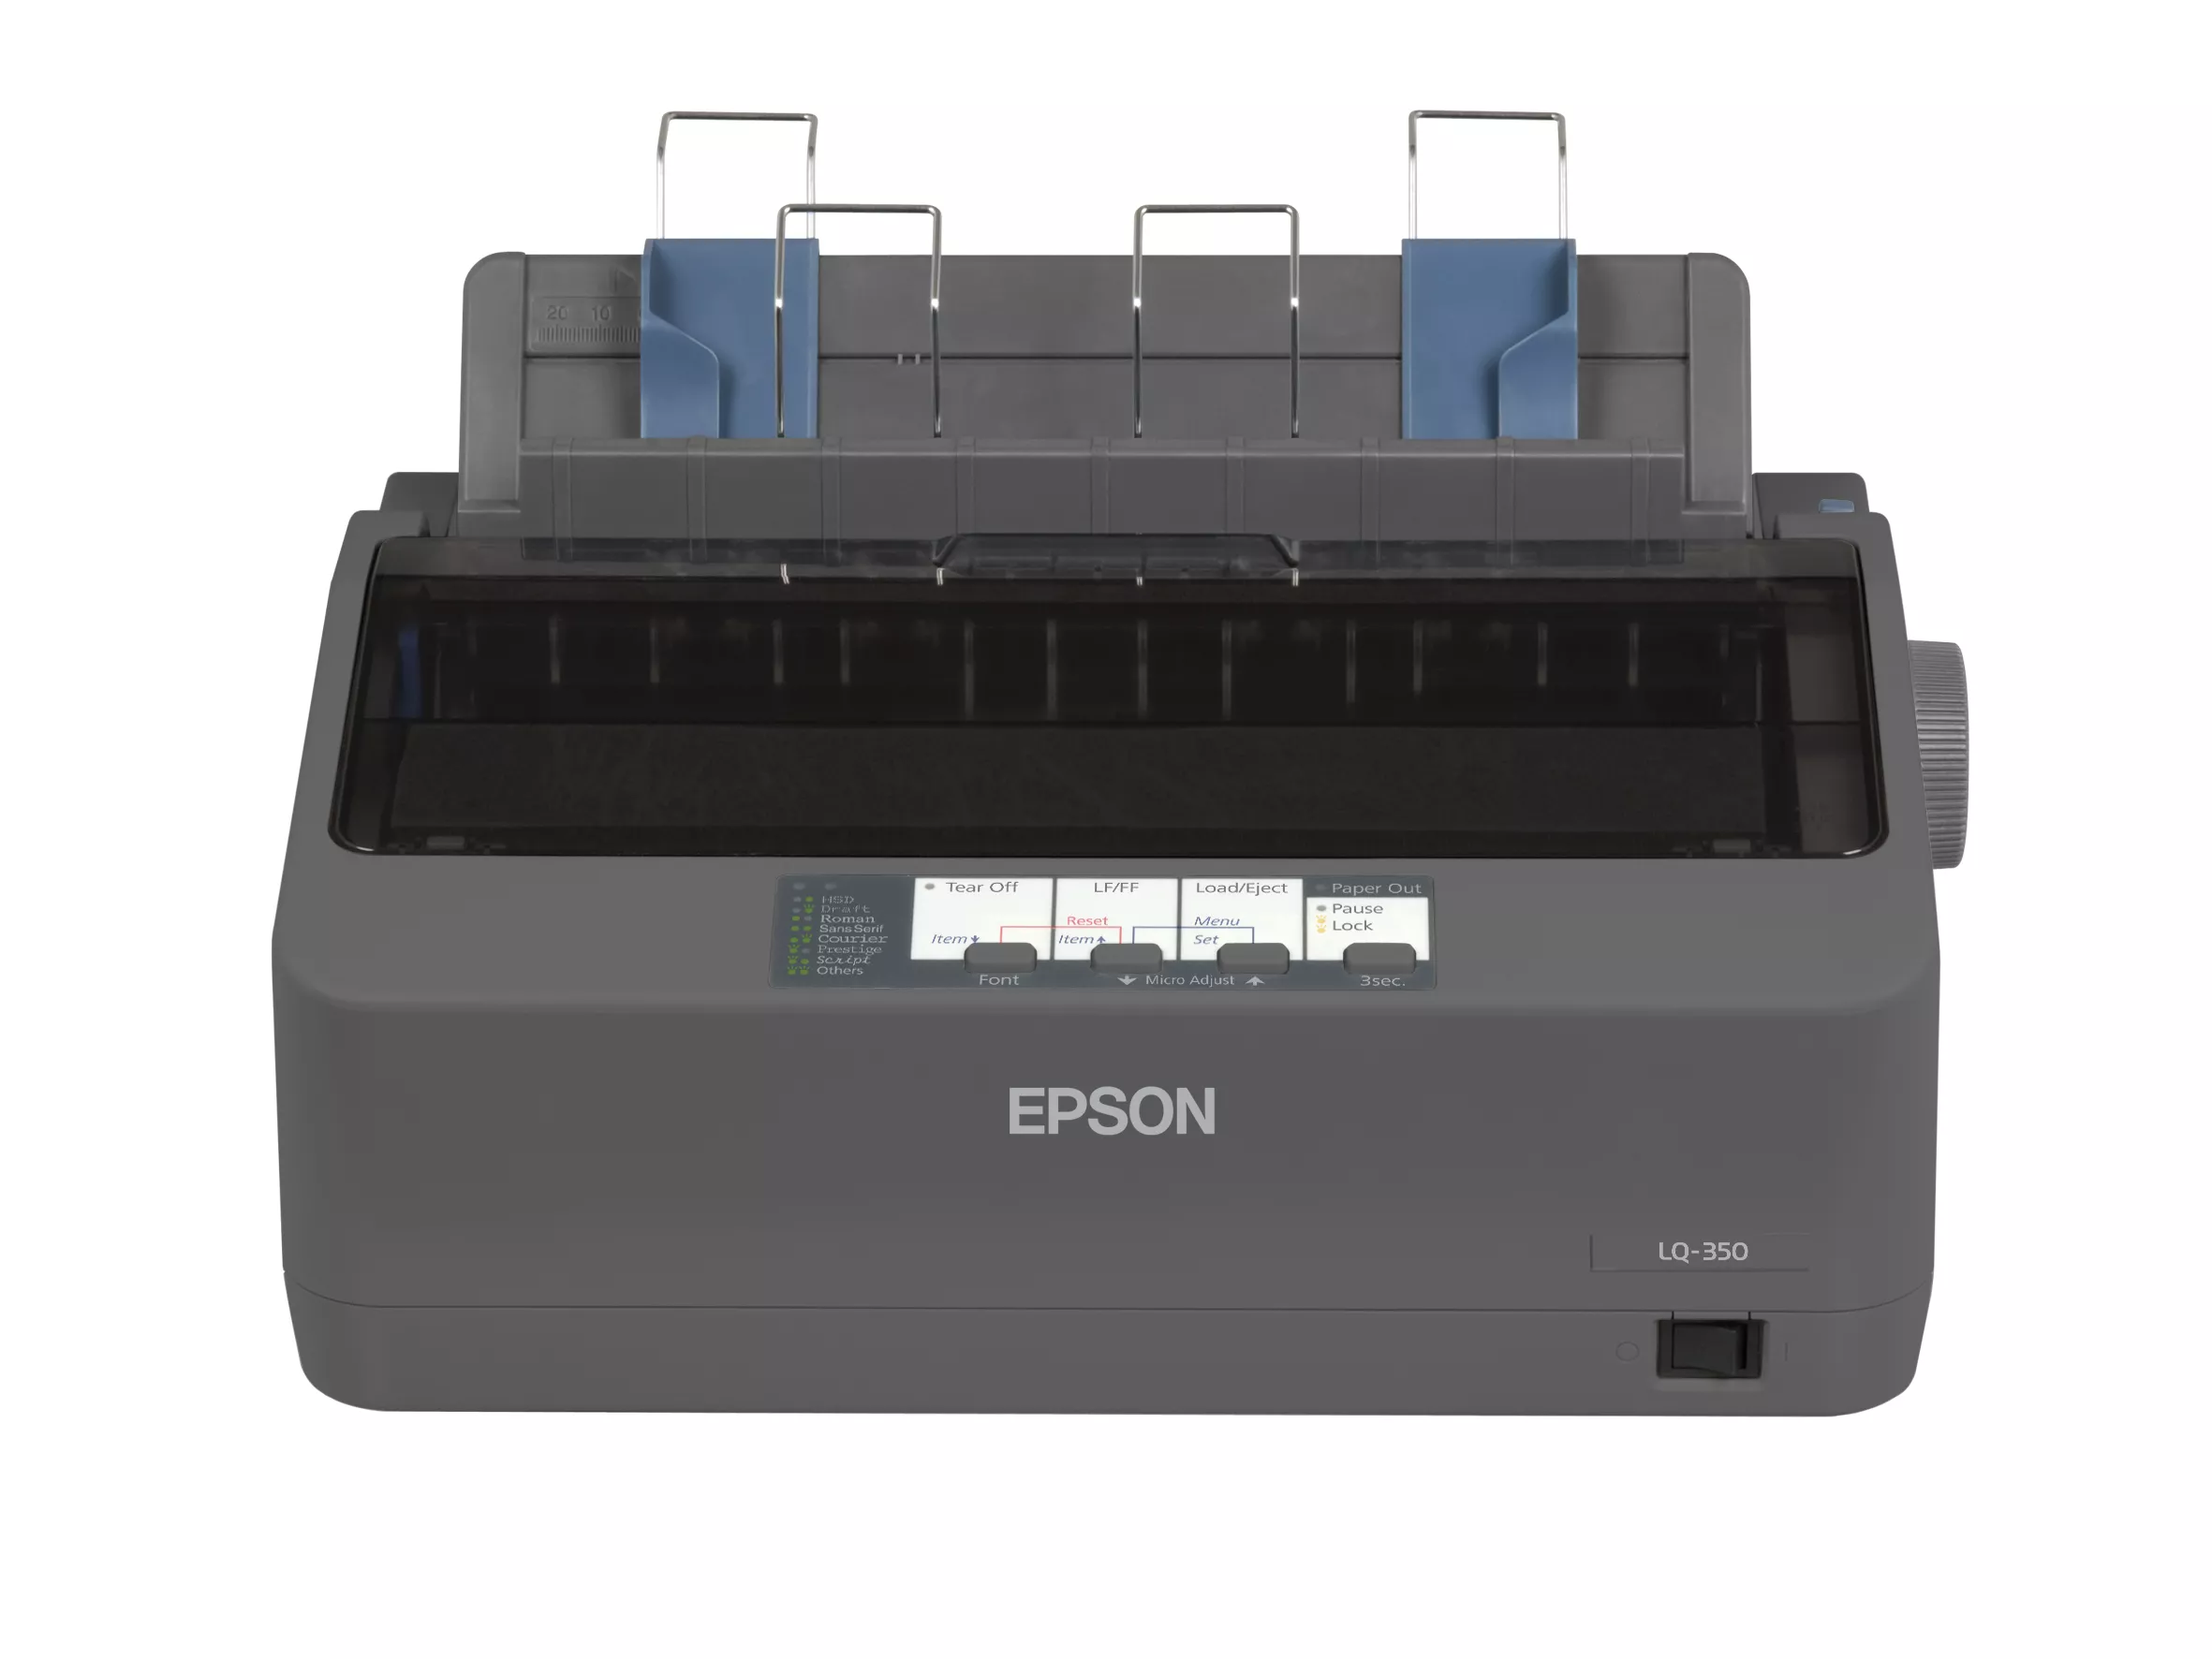 Vente EPSON LQ-350 Epson au meilleur prix - visuel 2